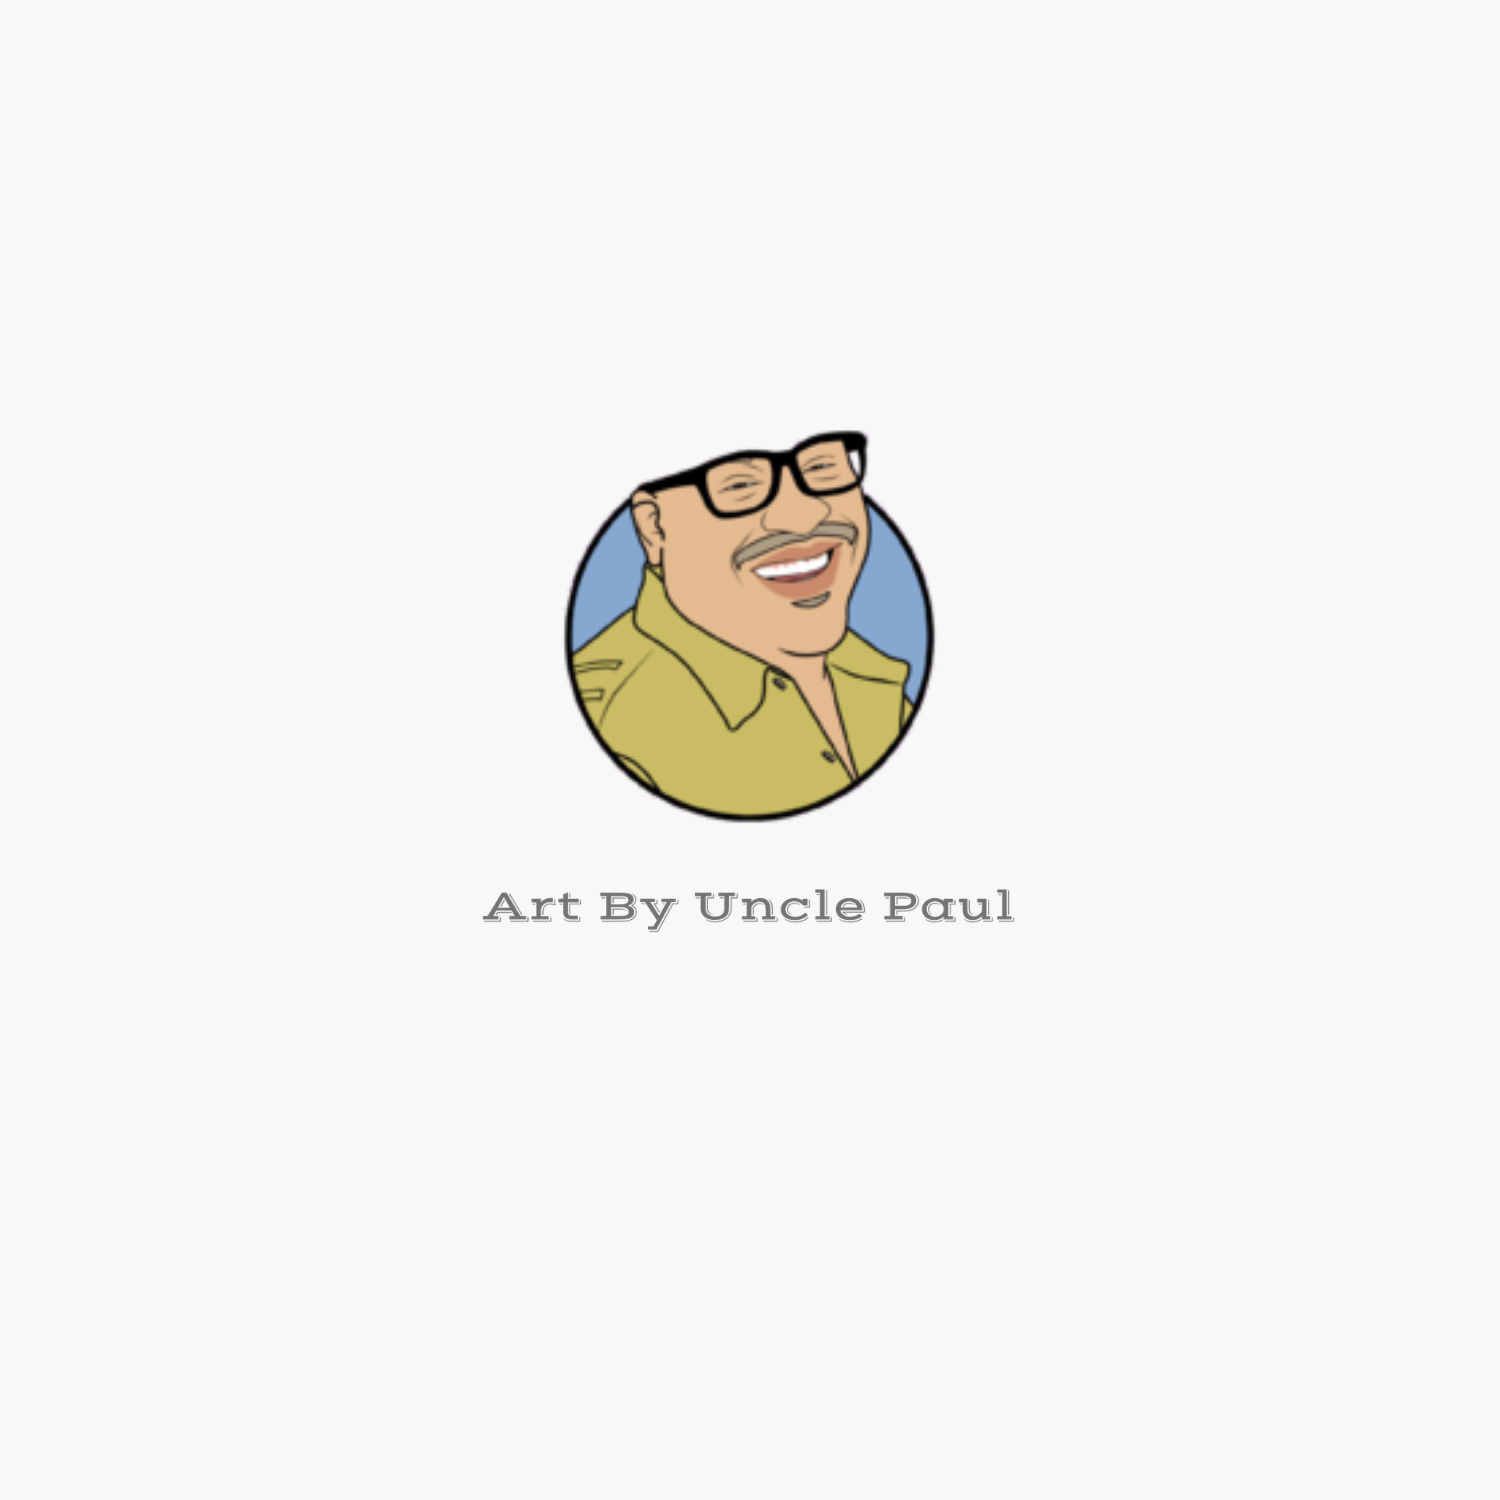 About Uncle Paul — Art By Uncle Paul